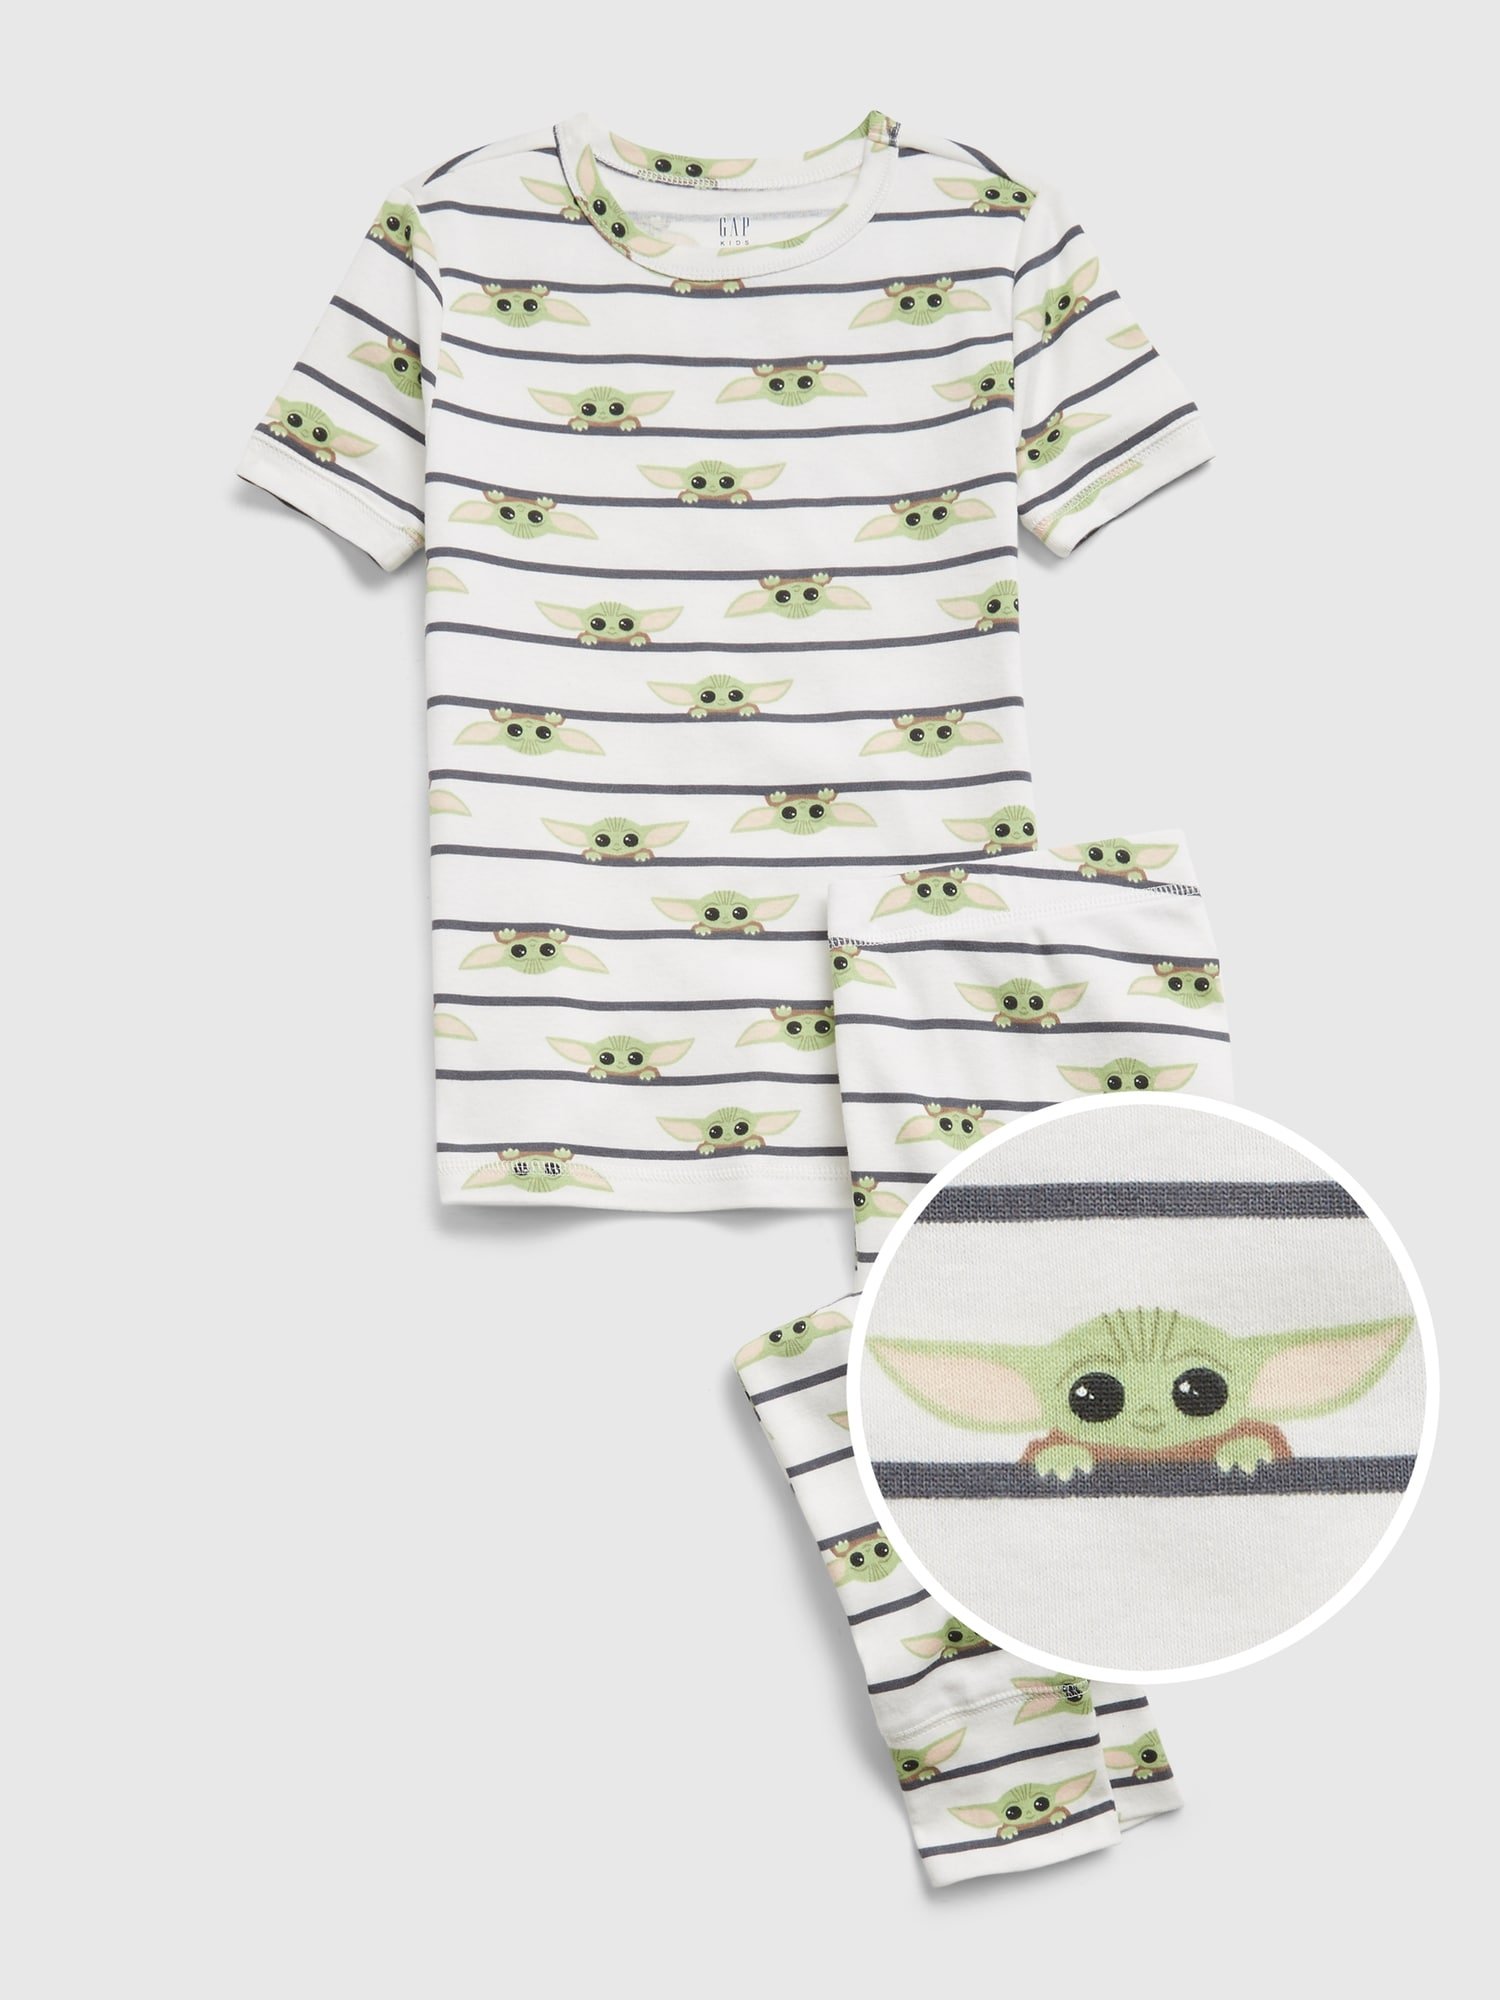 Star Wars™ %100 Organik Pamuk Pijama Takımı product image